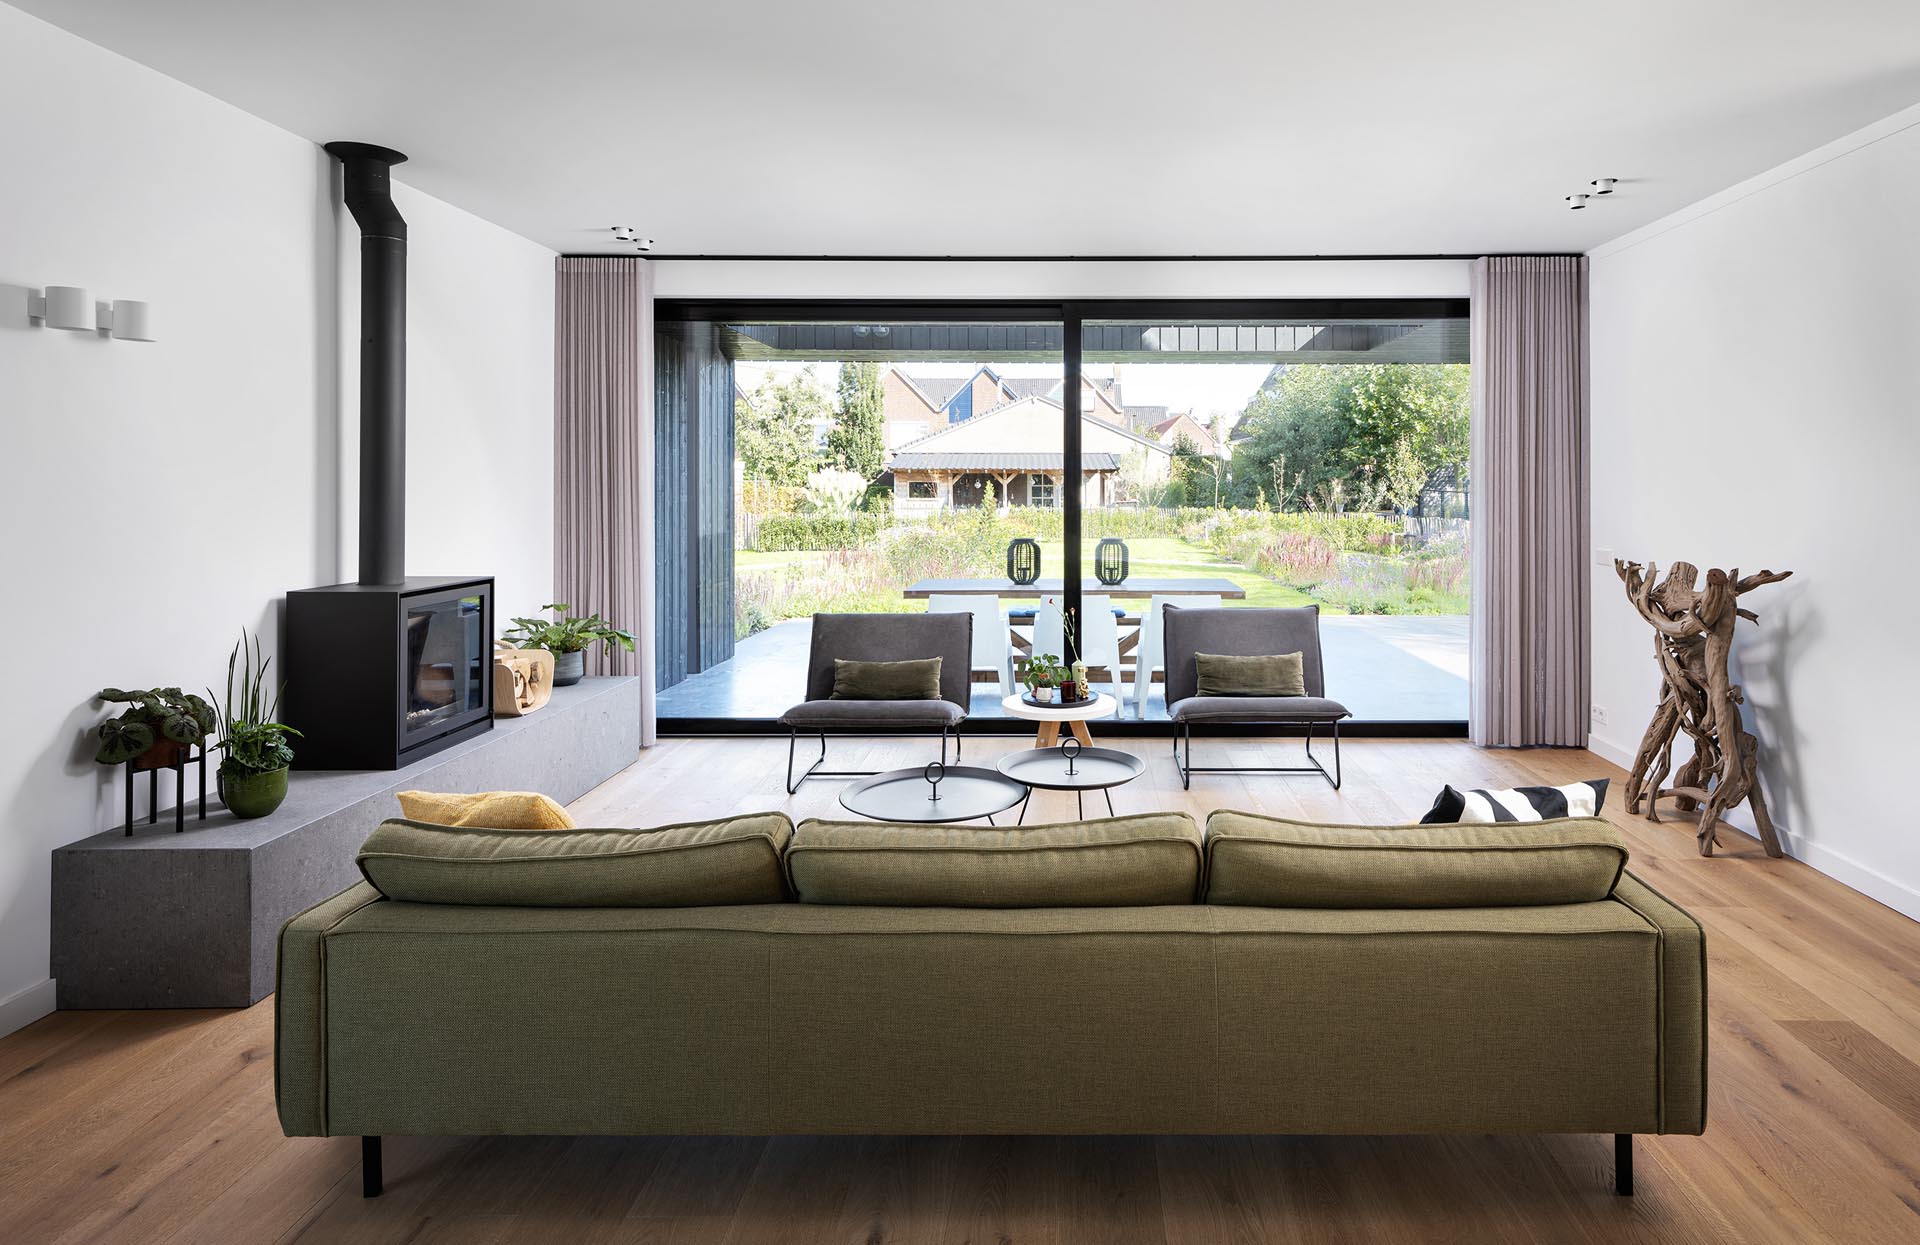 Внутри современного дома мебель сохранена в минималистичном стиле, а большие раздвижные двери открывают гостиную на открытый патио, предназначенный для обедов на свежем воздухе.